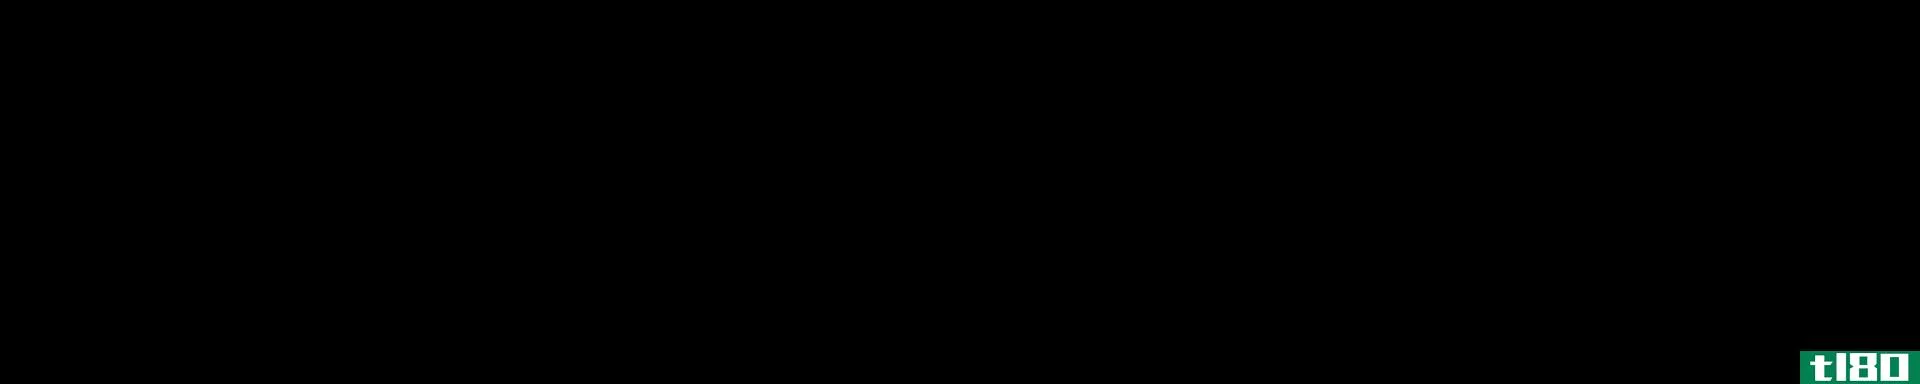 苯胺(aniline)和苄胺(benzylamine)的区别